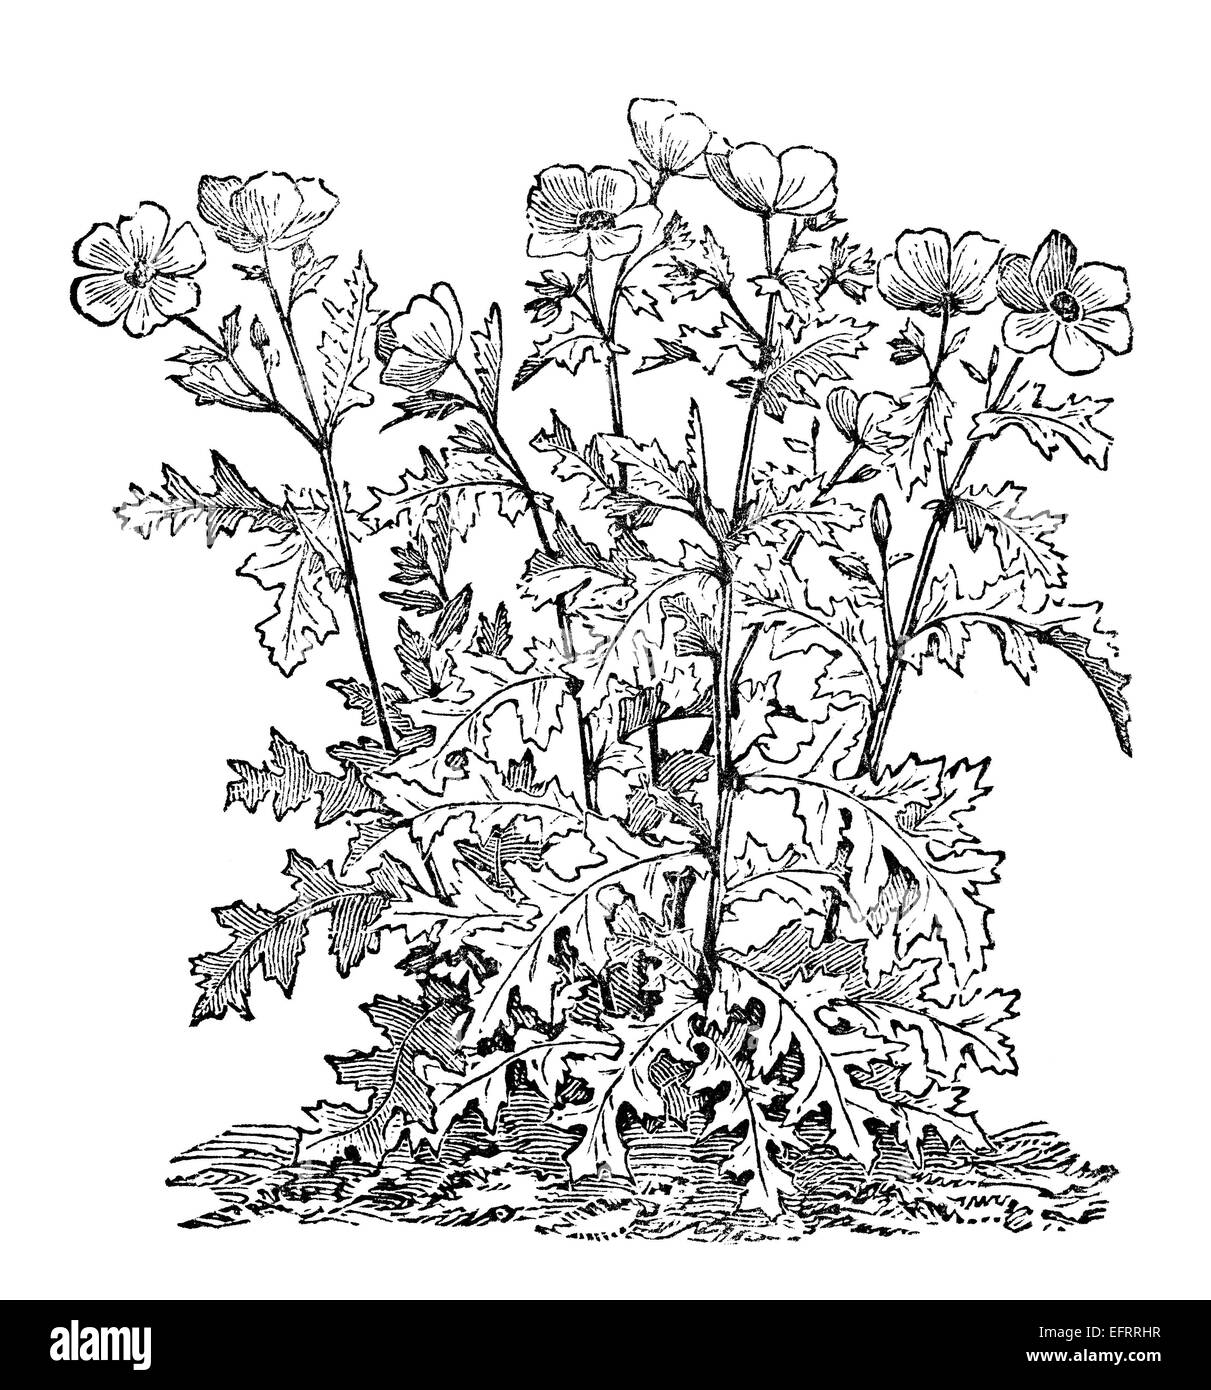 Gravure d'une victorienne prickly poppy, ou argemone. Image restaurée numériquement à partir d'un milieu du xixe siècle l'encyclopédie. Banque D'Images